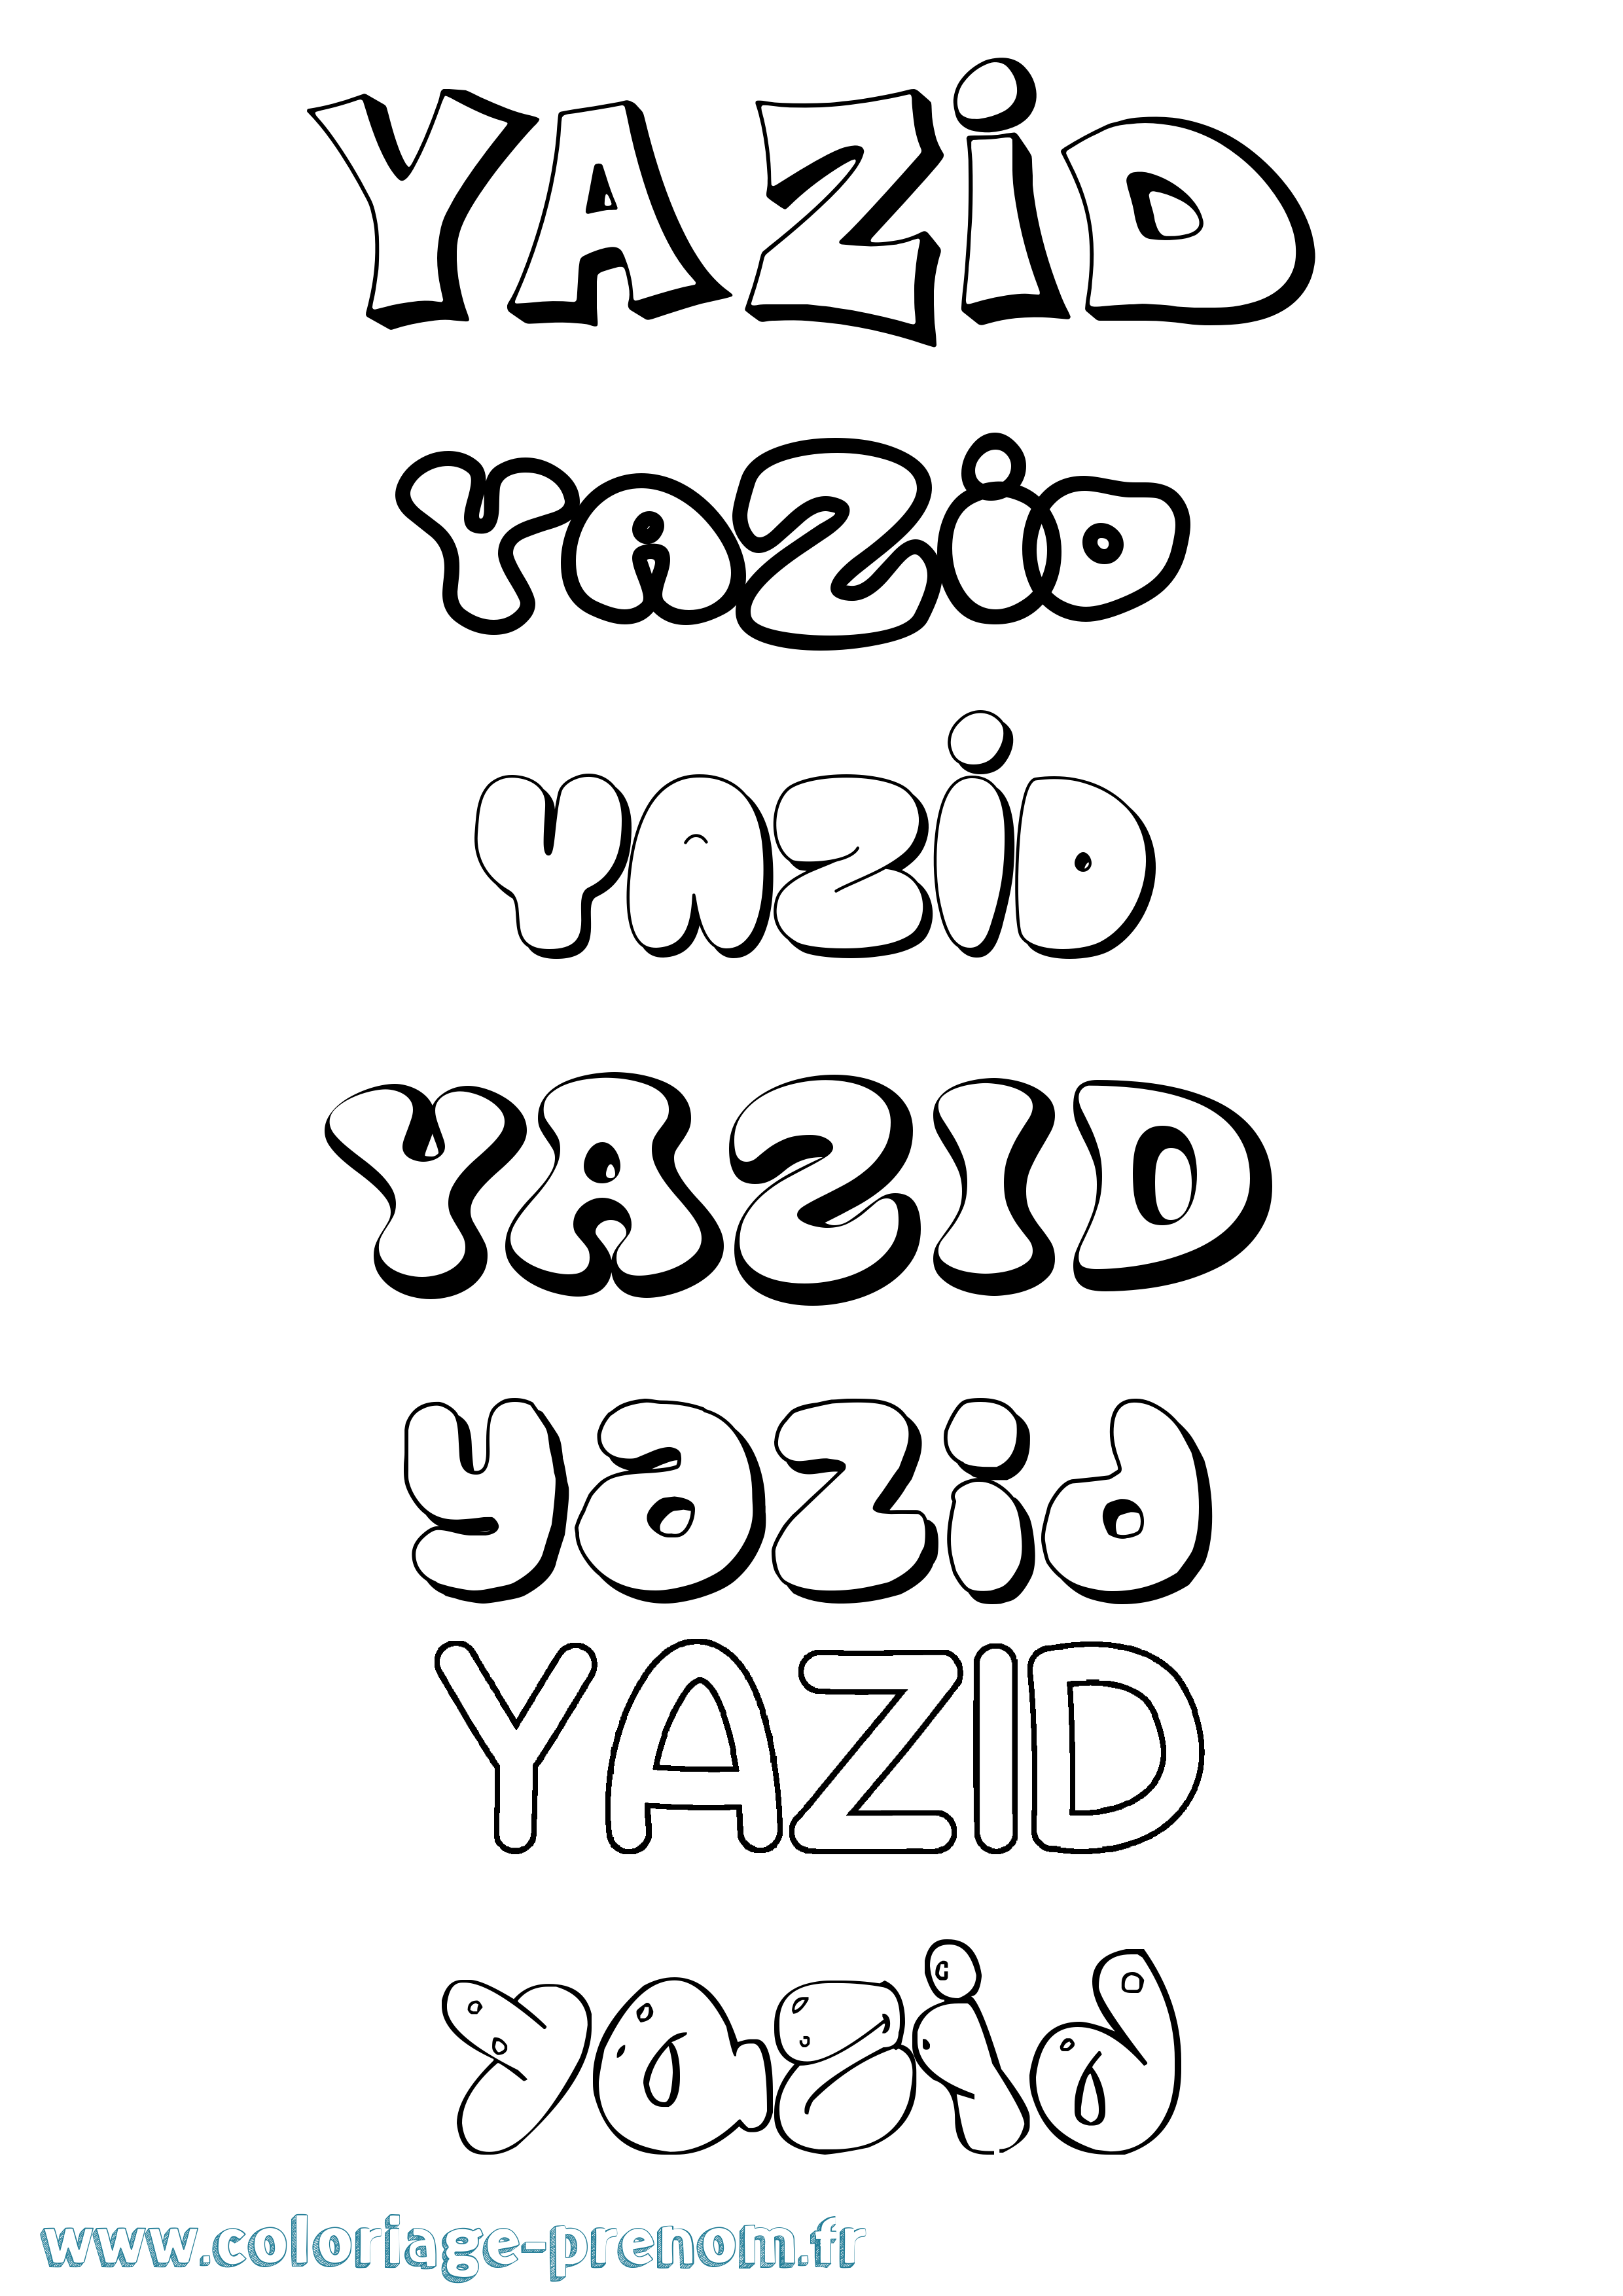 Coloriage prénom Yazid Bubble